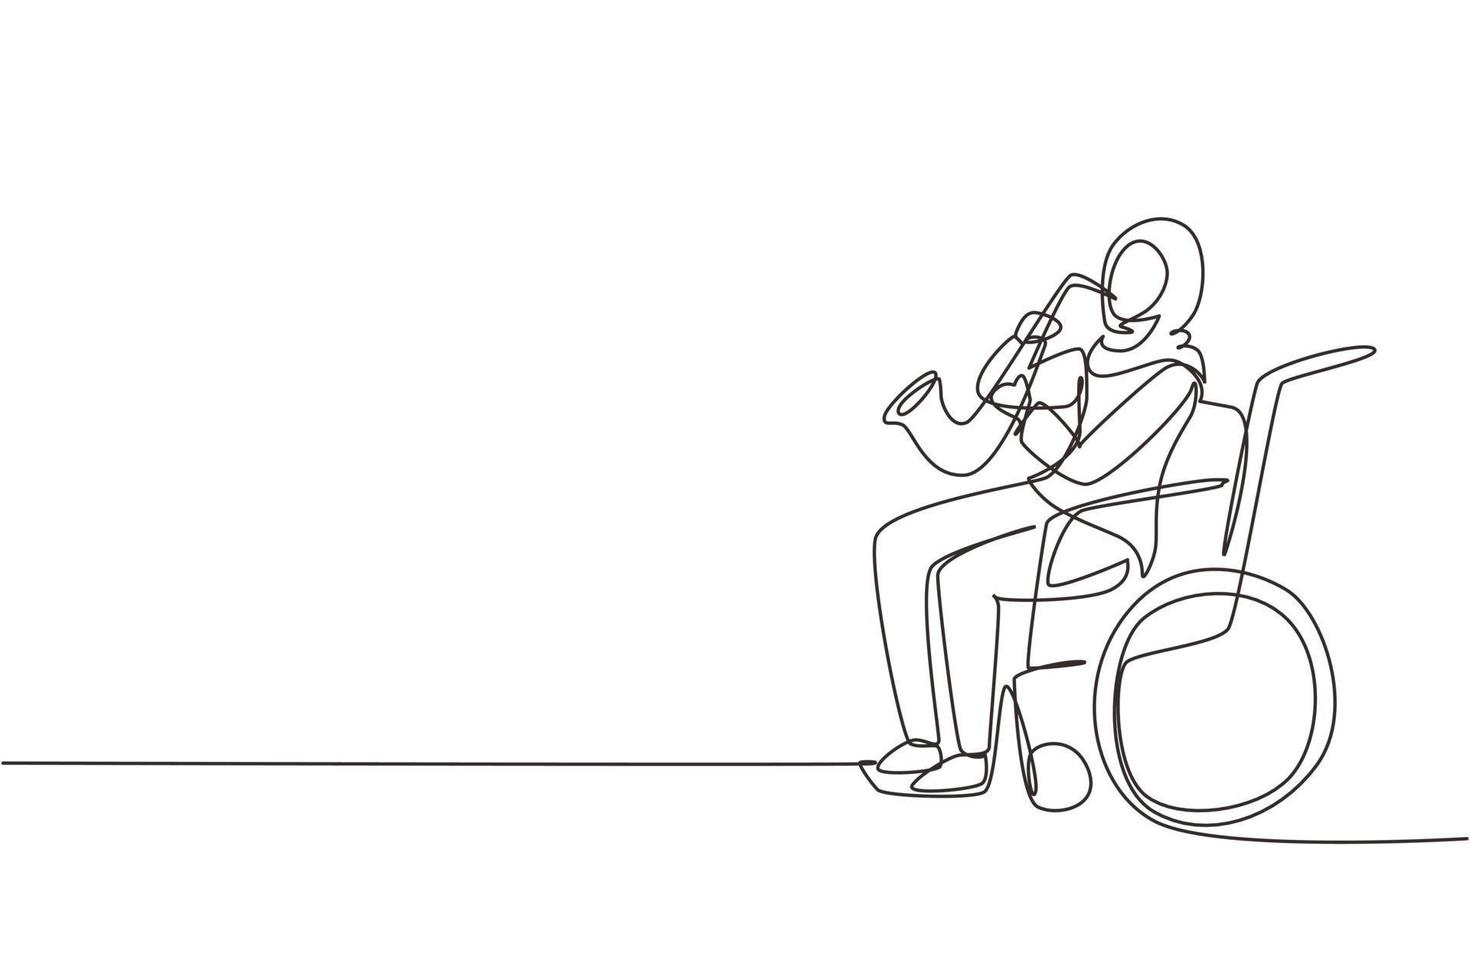 Una sola mujer árabe dibujando una línea sentada en silla de ruedas toca el saxofón. discapacidad, música clásica. Físicamente desarmado. persona en el hospital. ilustración de vector gráfico de diseño de dibujo de línea continua